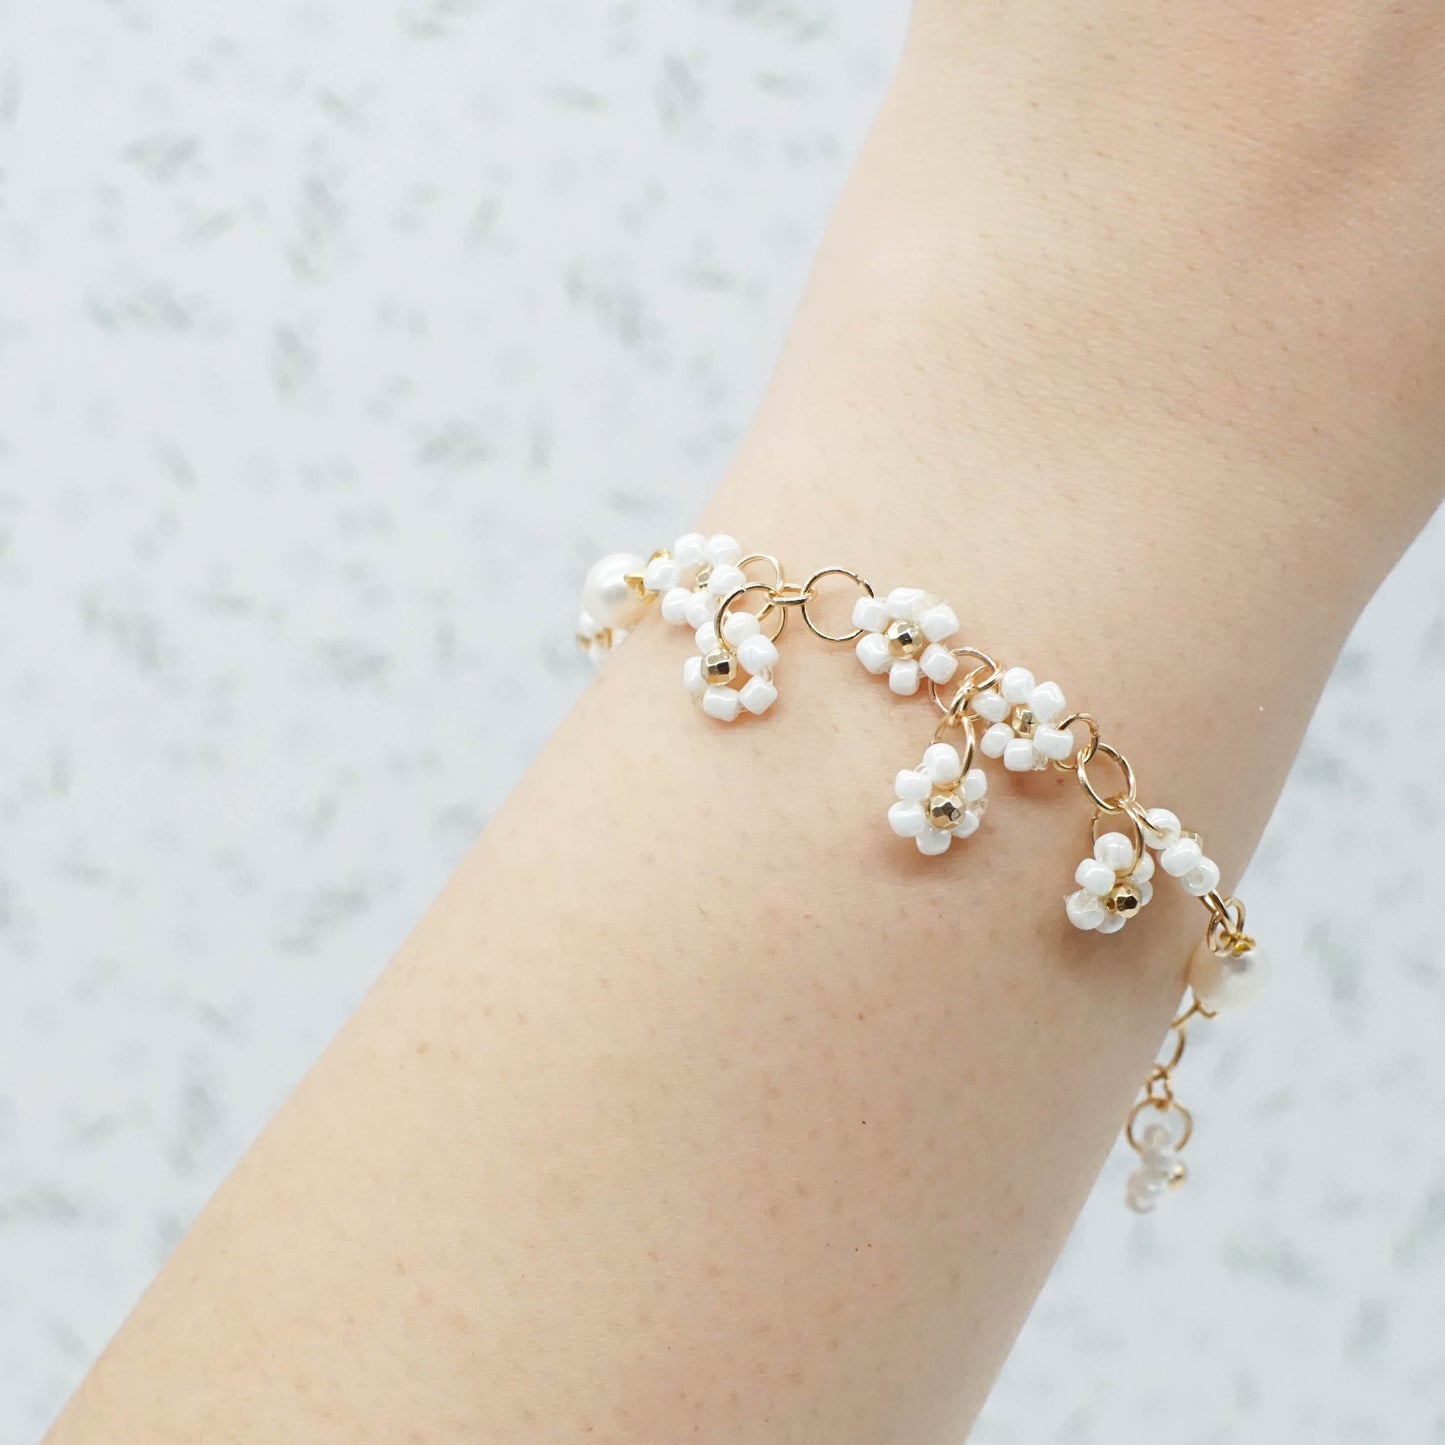 Flower Charm Bracelet - GOLDEN VINES